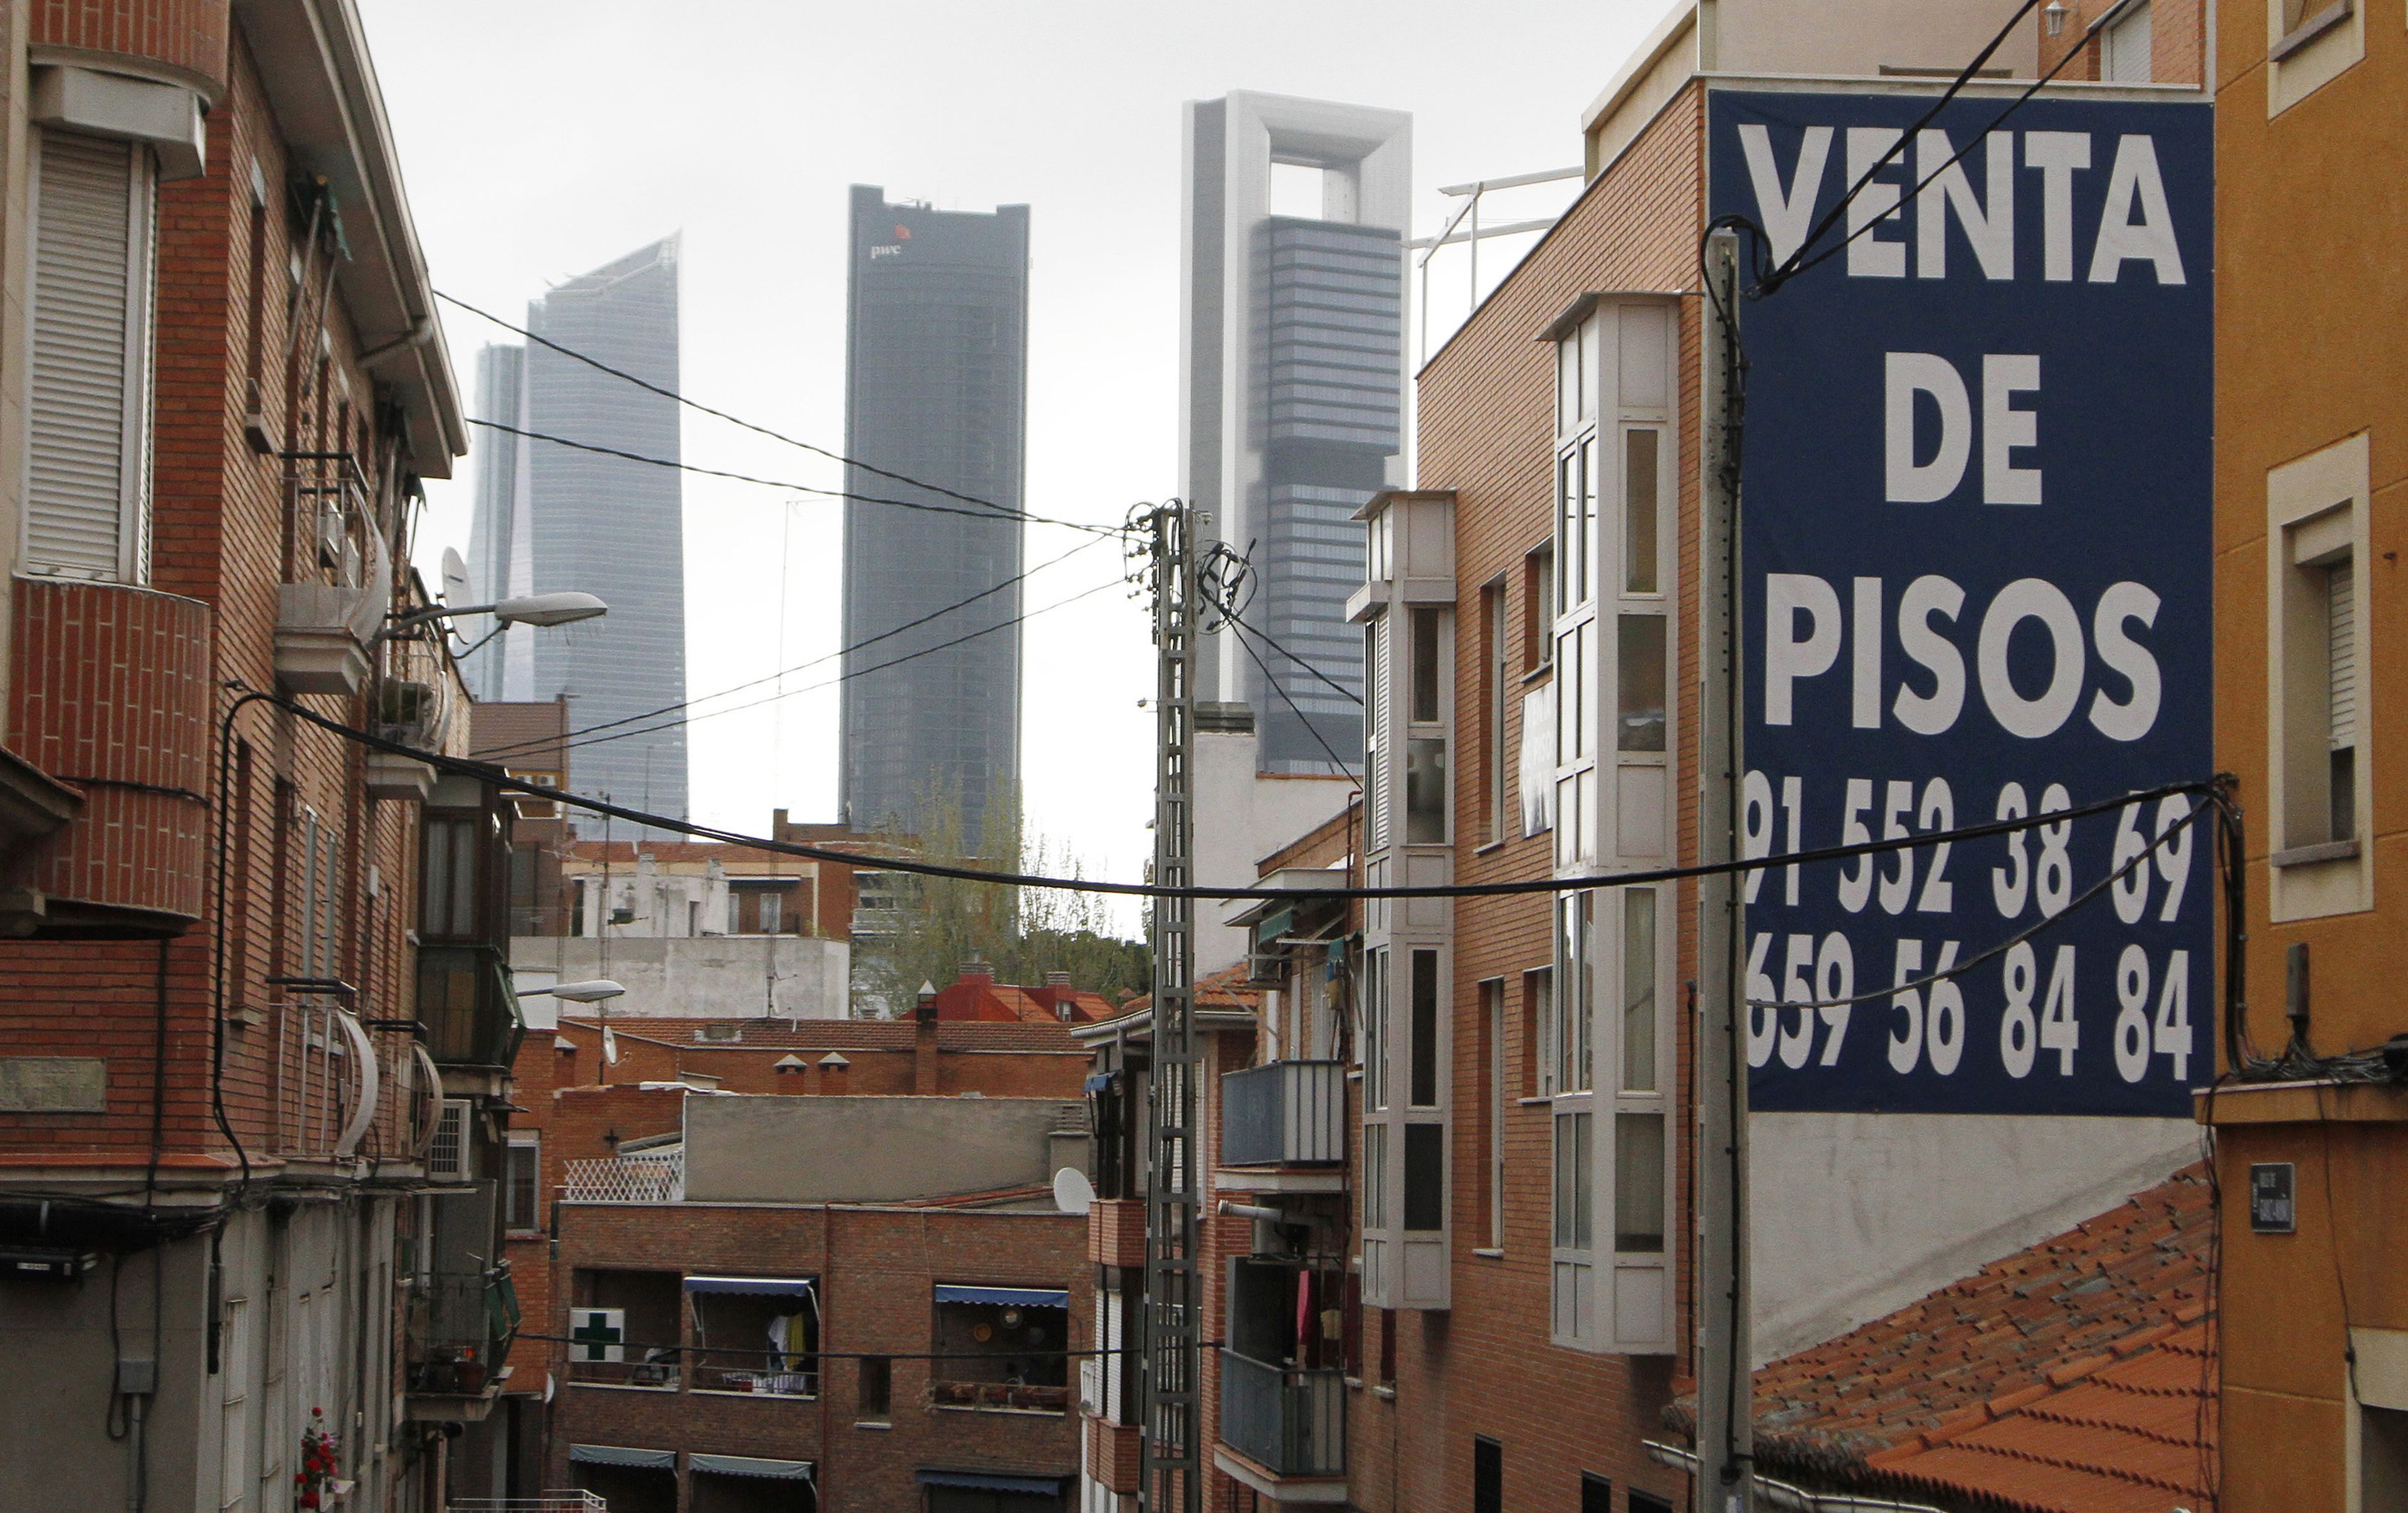 Pisos en venta con cartel, en Madrid